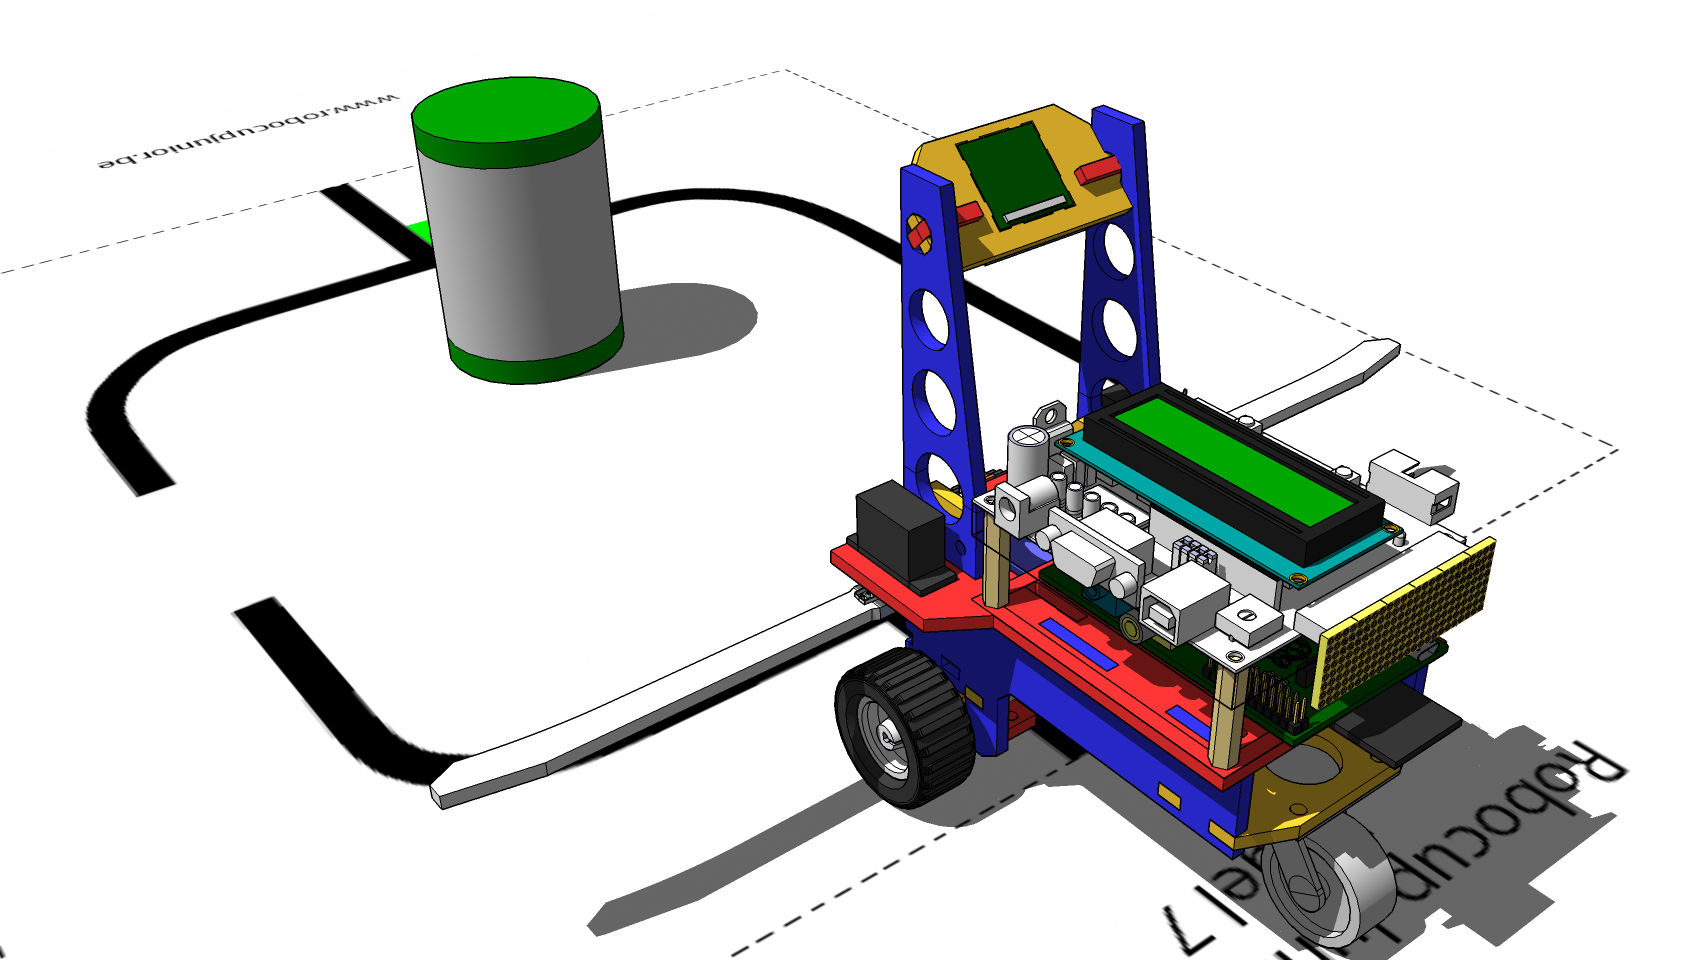 CAD ontwerp voor de Robocup Junior competitie